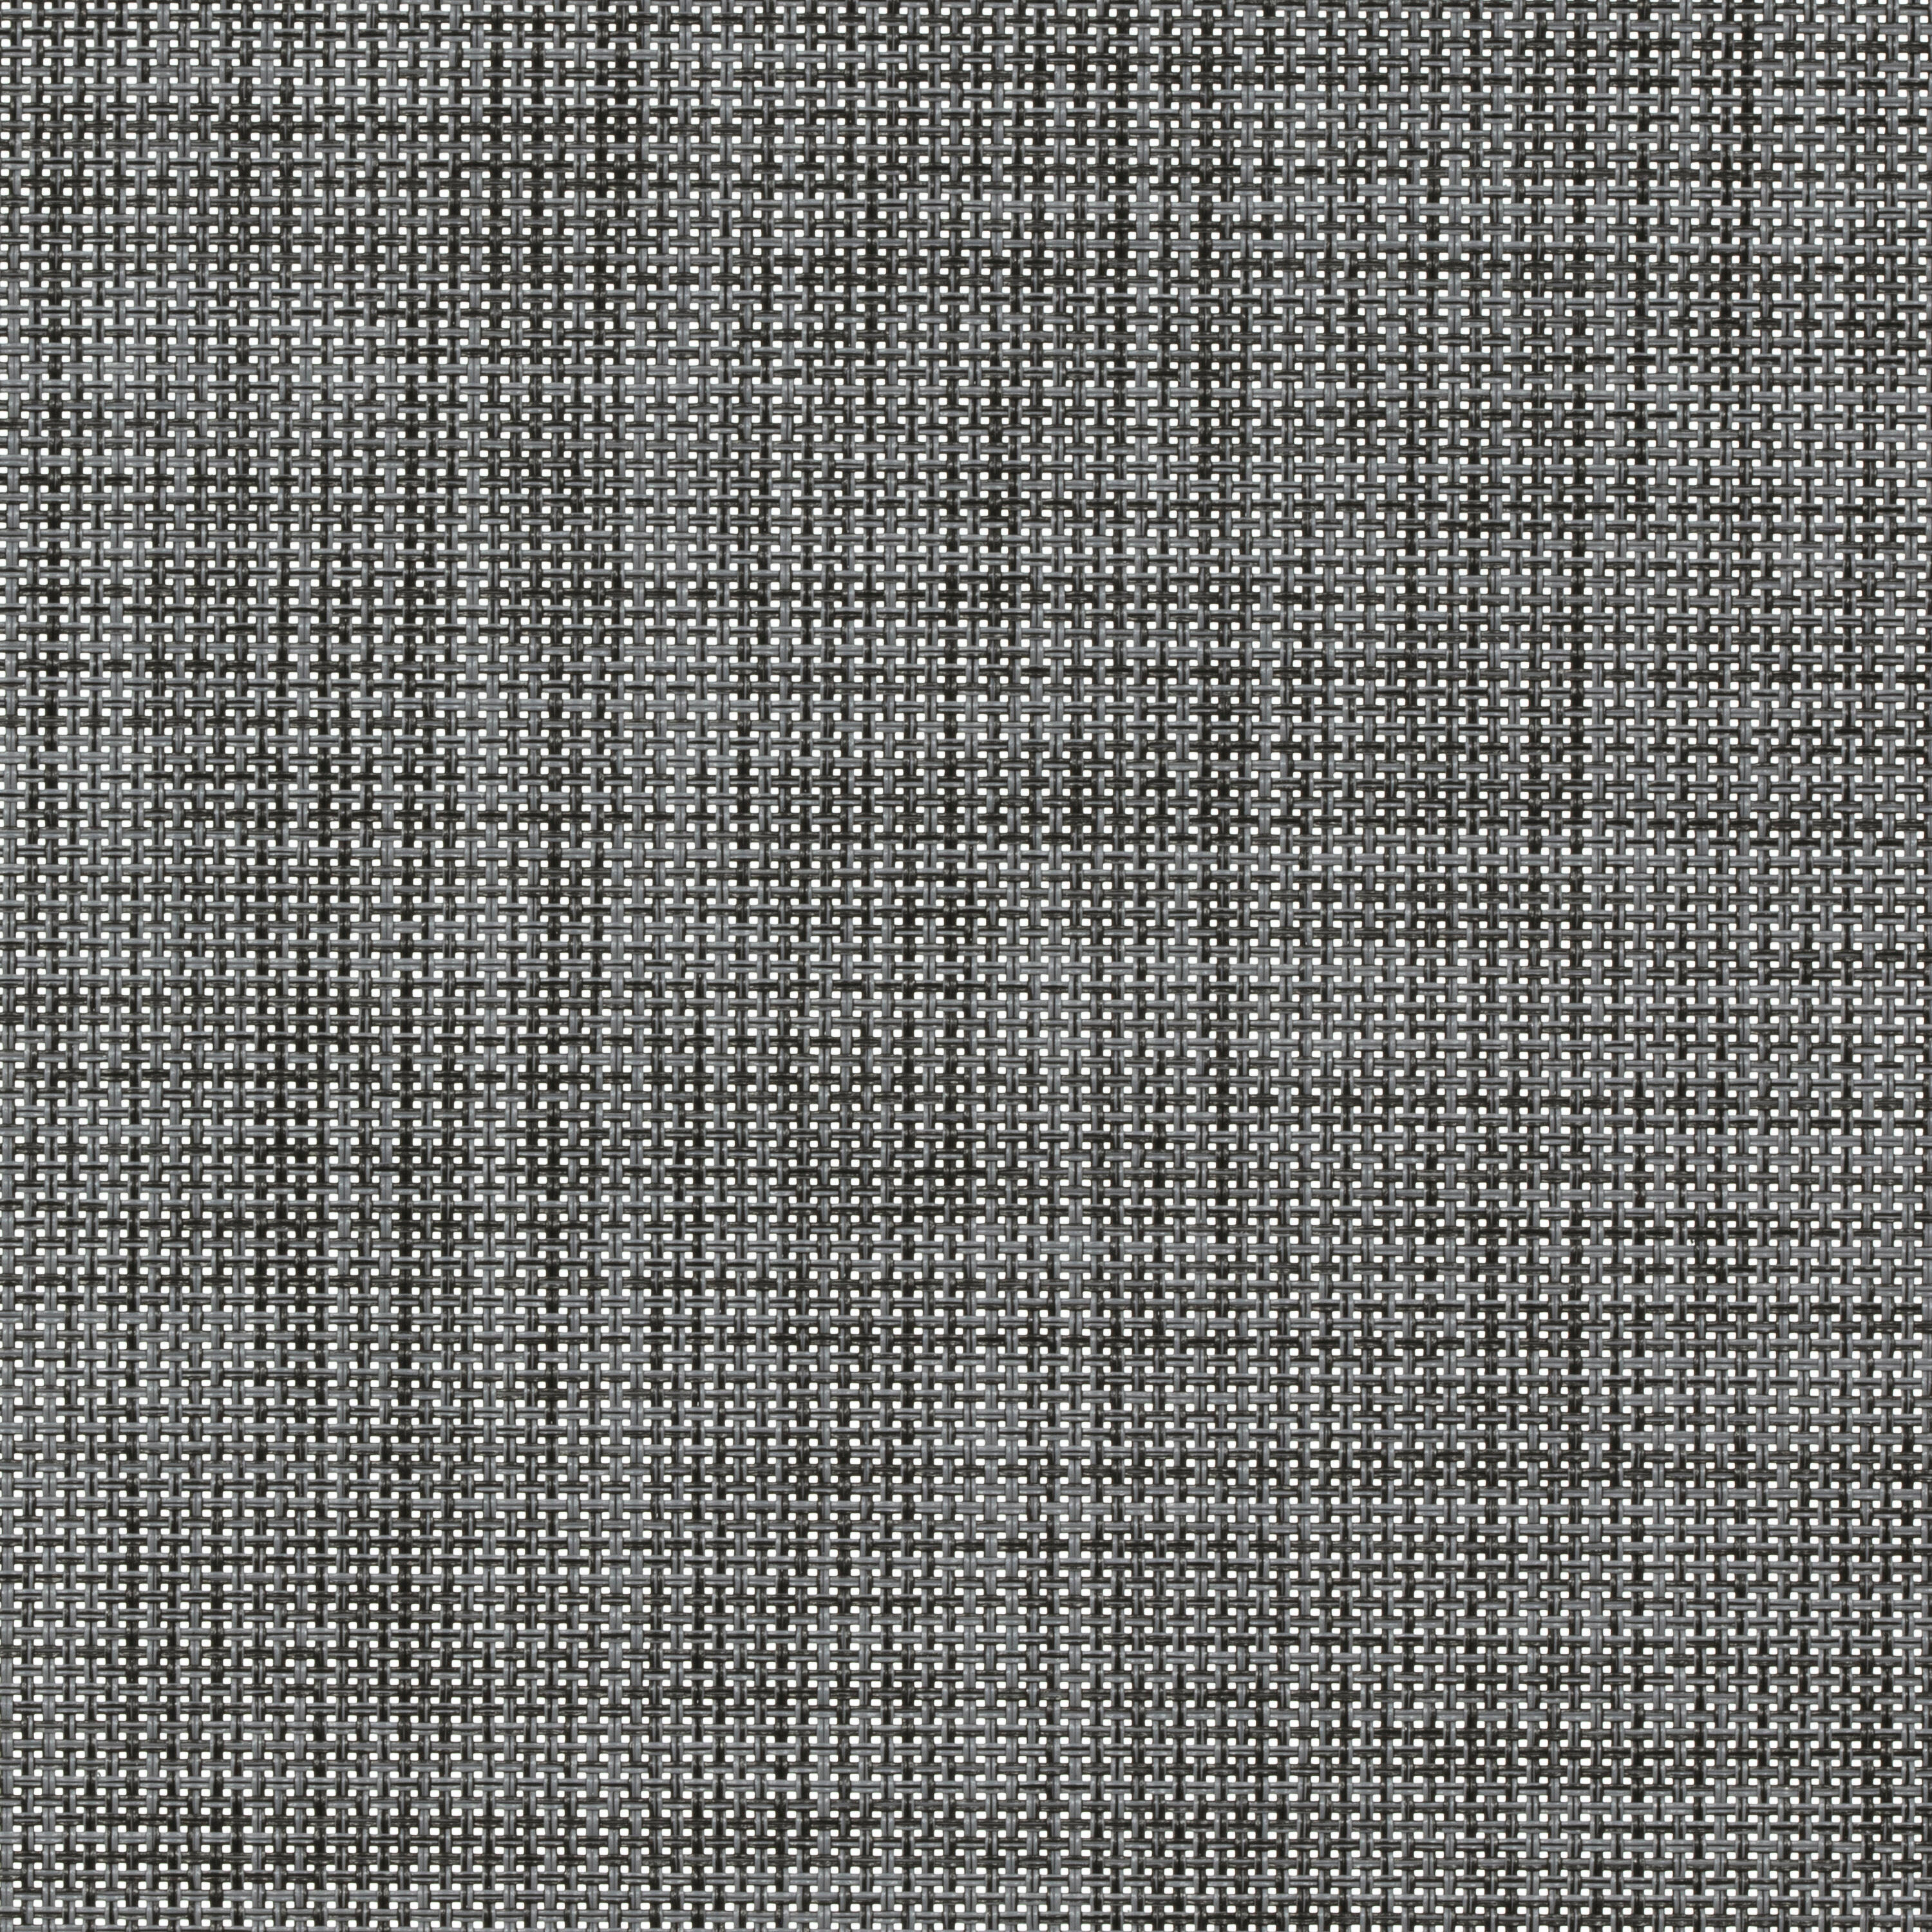 Tessuto per tende a rullo filtrante INSPIRE Puebla grigio / argento 115.8 x 250 cm - 3